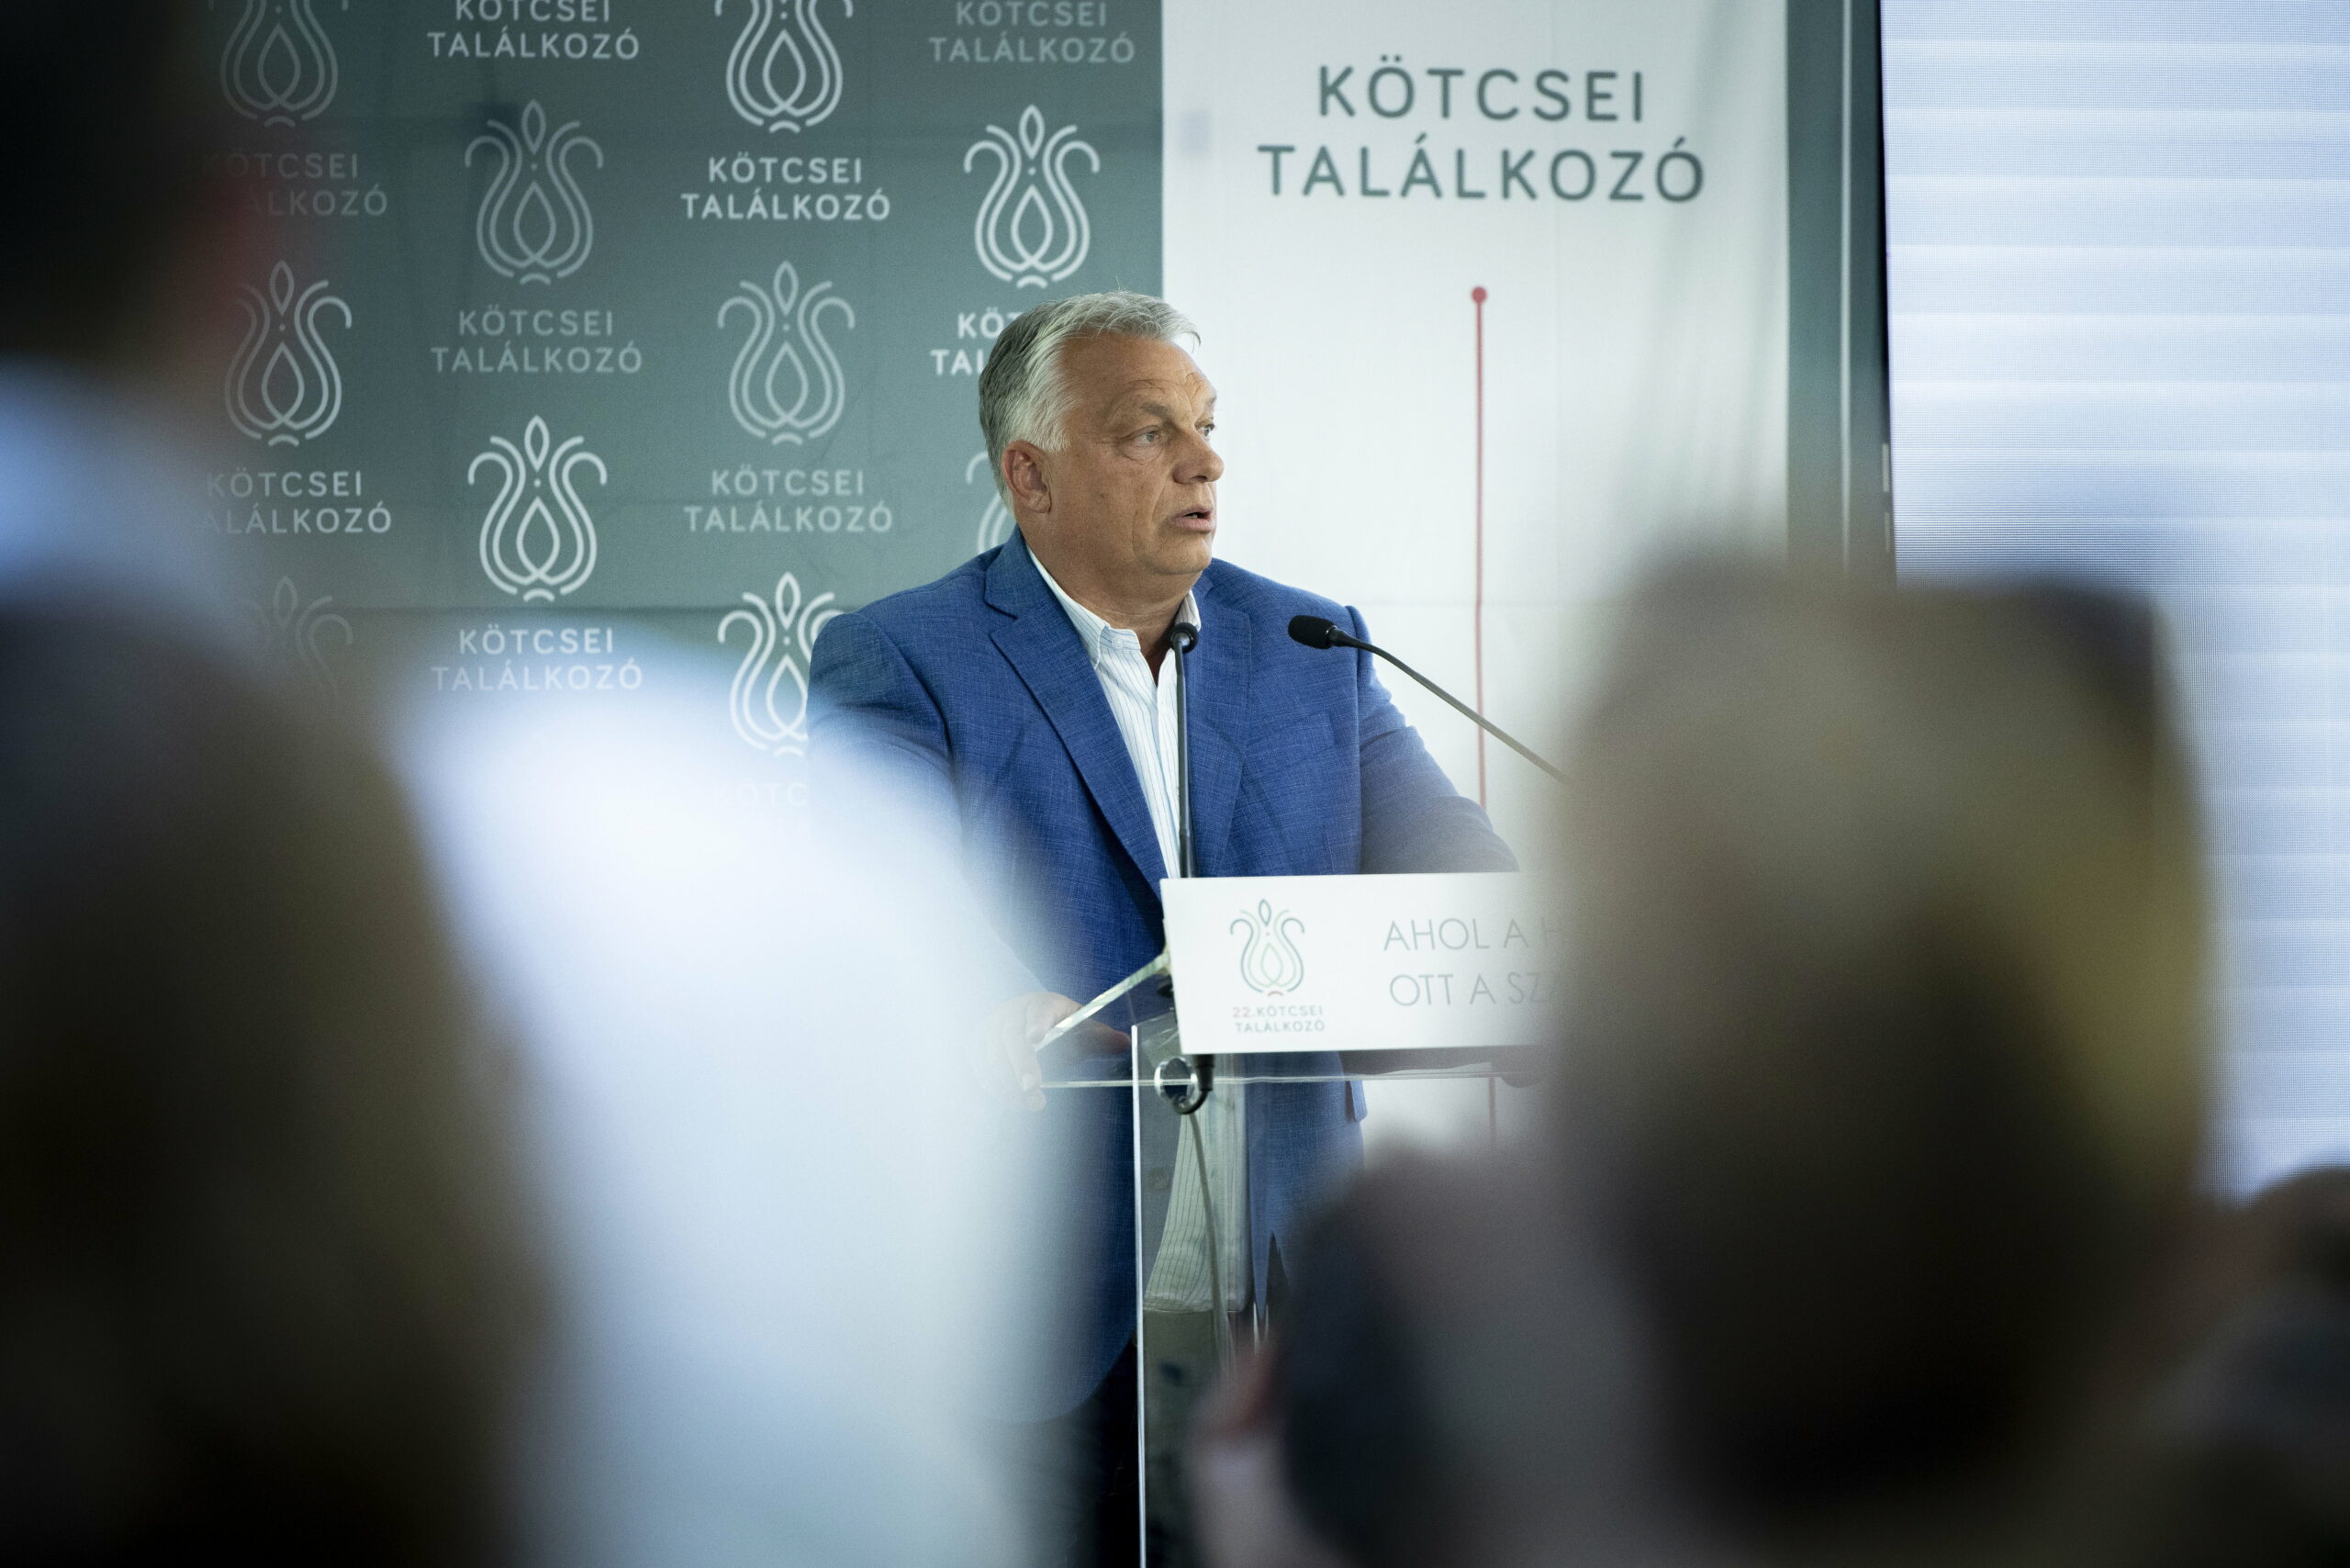 50 százalék az esélye annak, hogy az Európai Unió széthullik – erről beszélt Orbán Viktor Kötcsén Fricz Tamás szerint